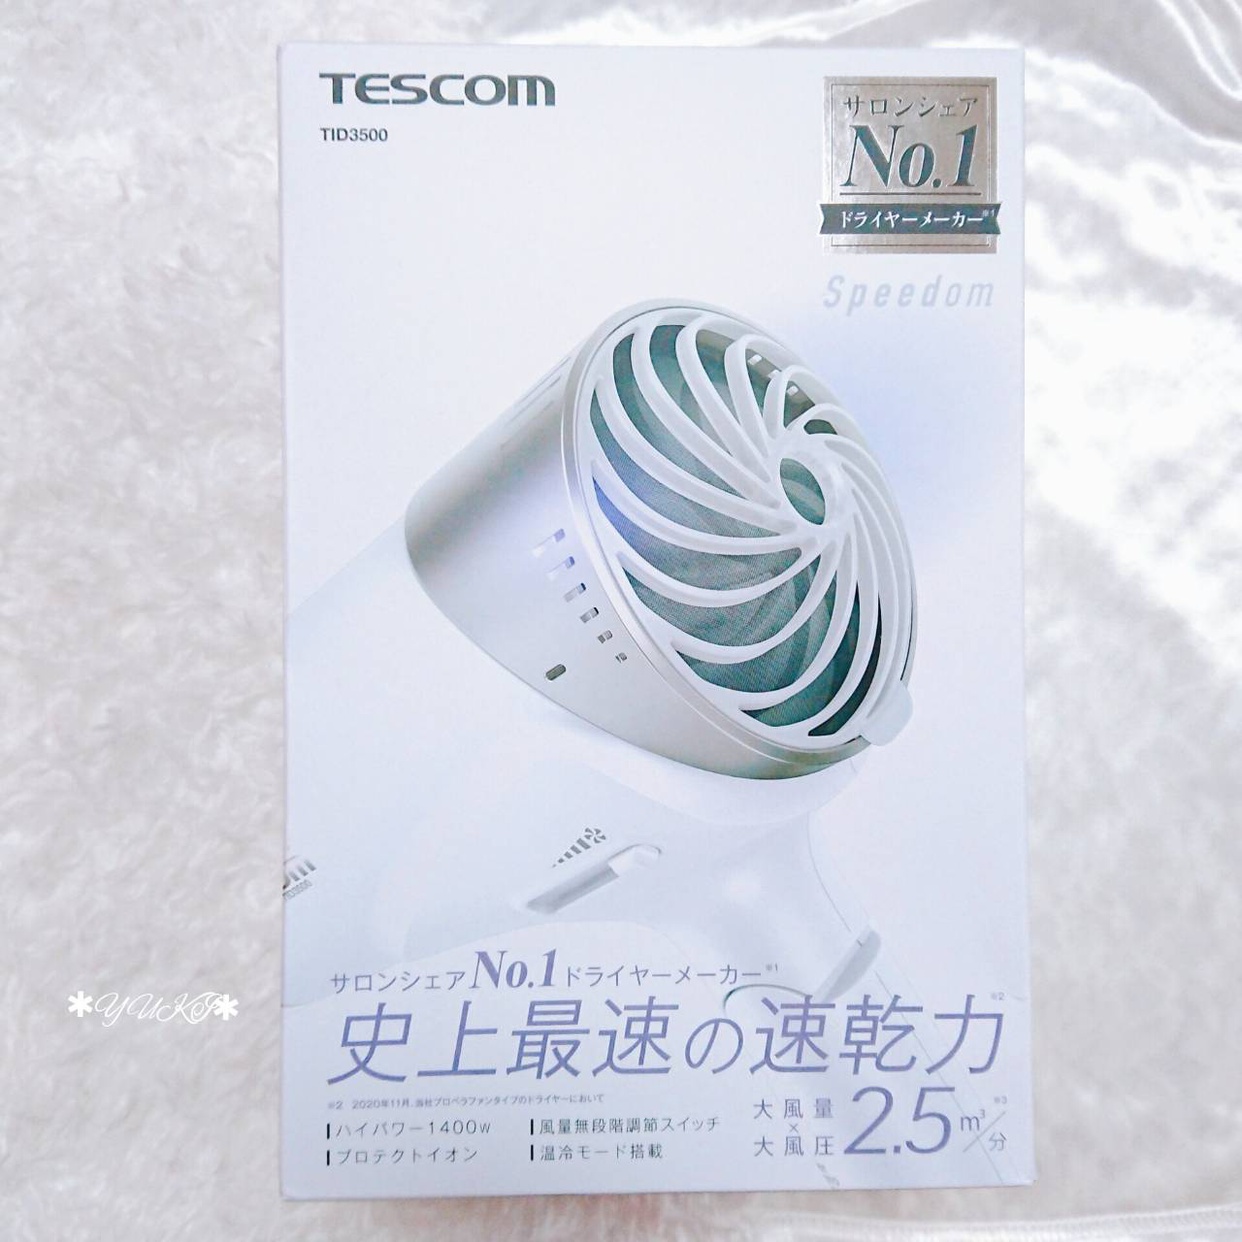 TESCOM(テスコム) プロテクトイオン ヘアードライヤー TID3500を使ったYUKIさんのクチコミ画像10